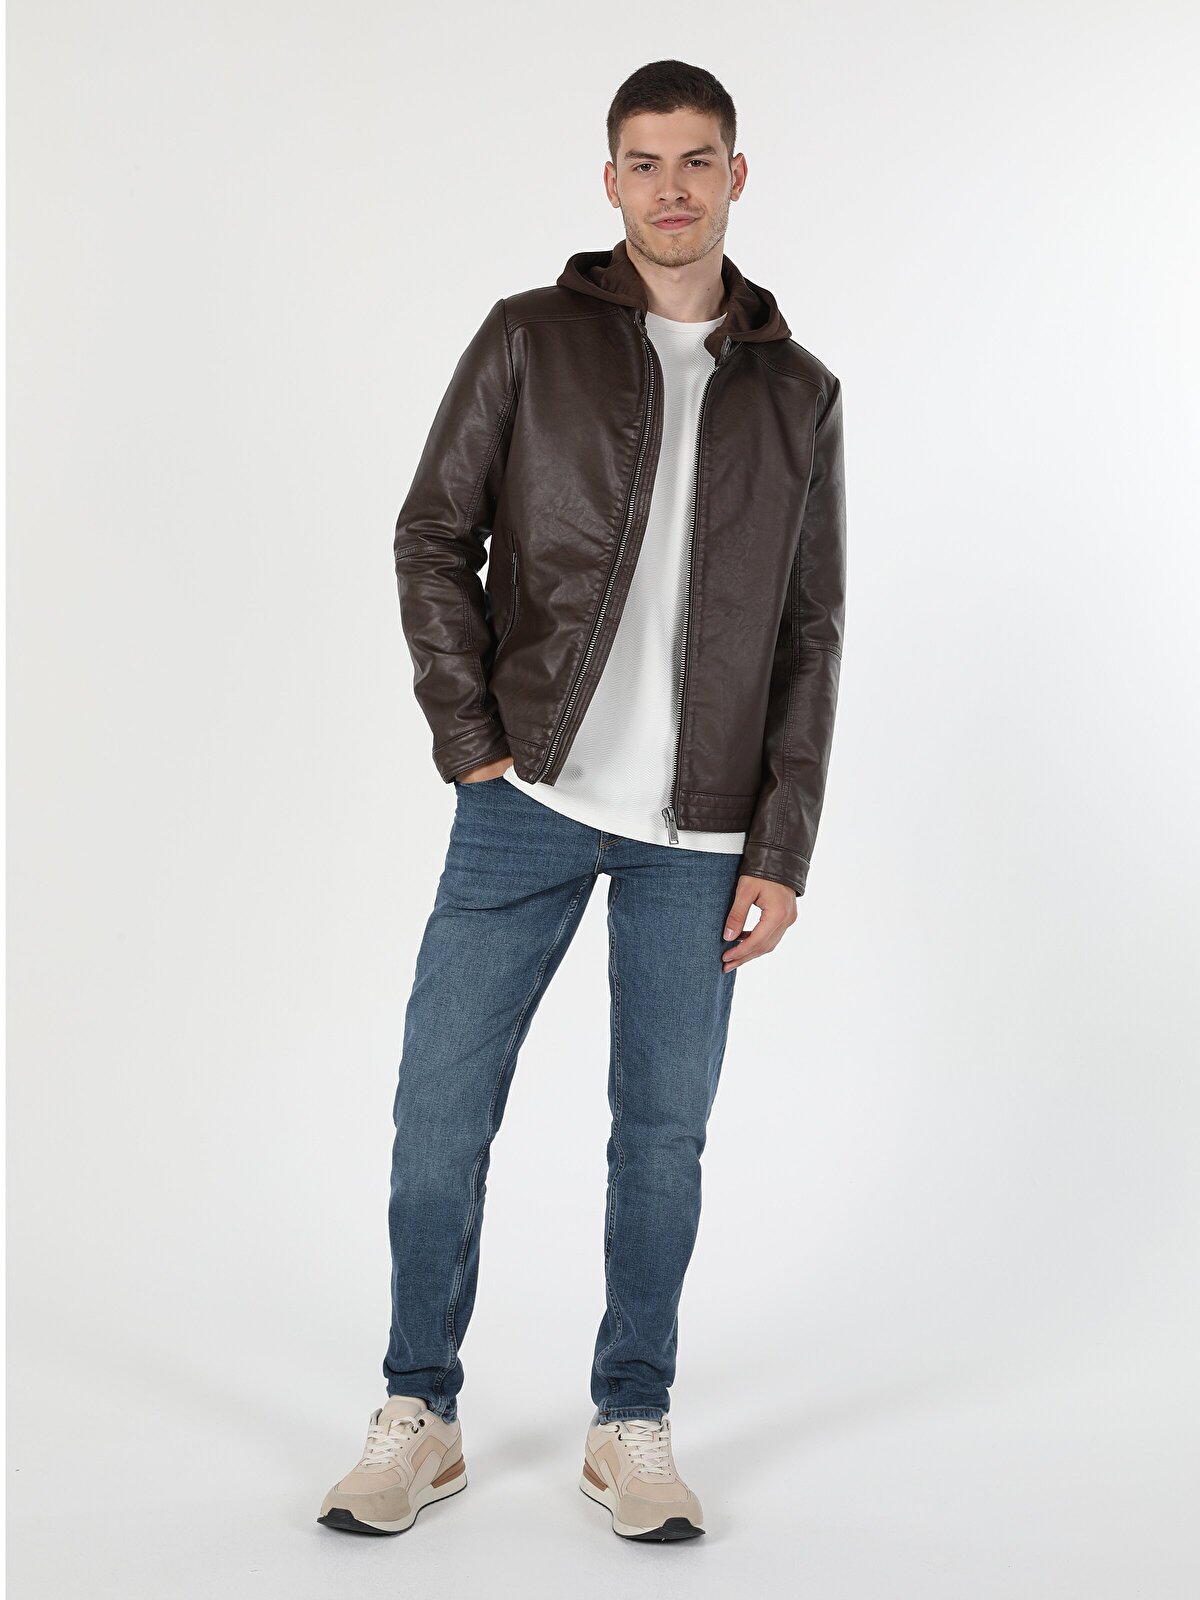 Кожаная куртка мужская Colin's CL1054817_Q1.V1 коричневая S